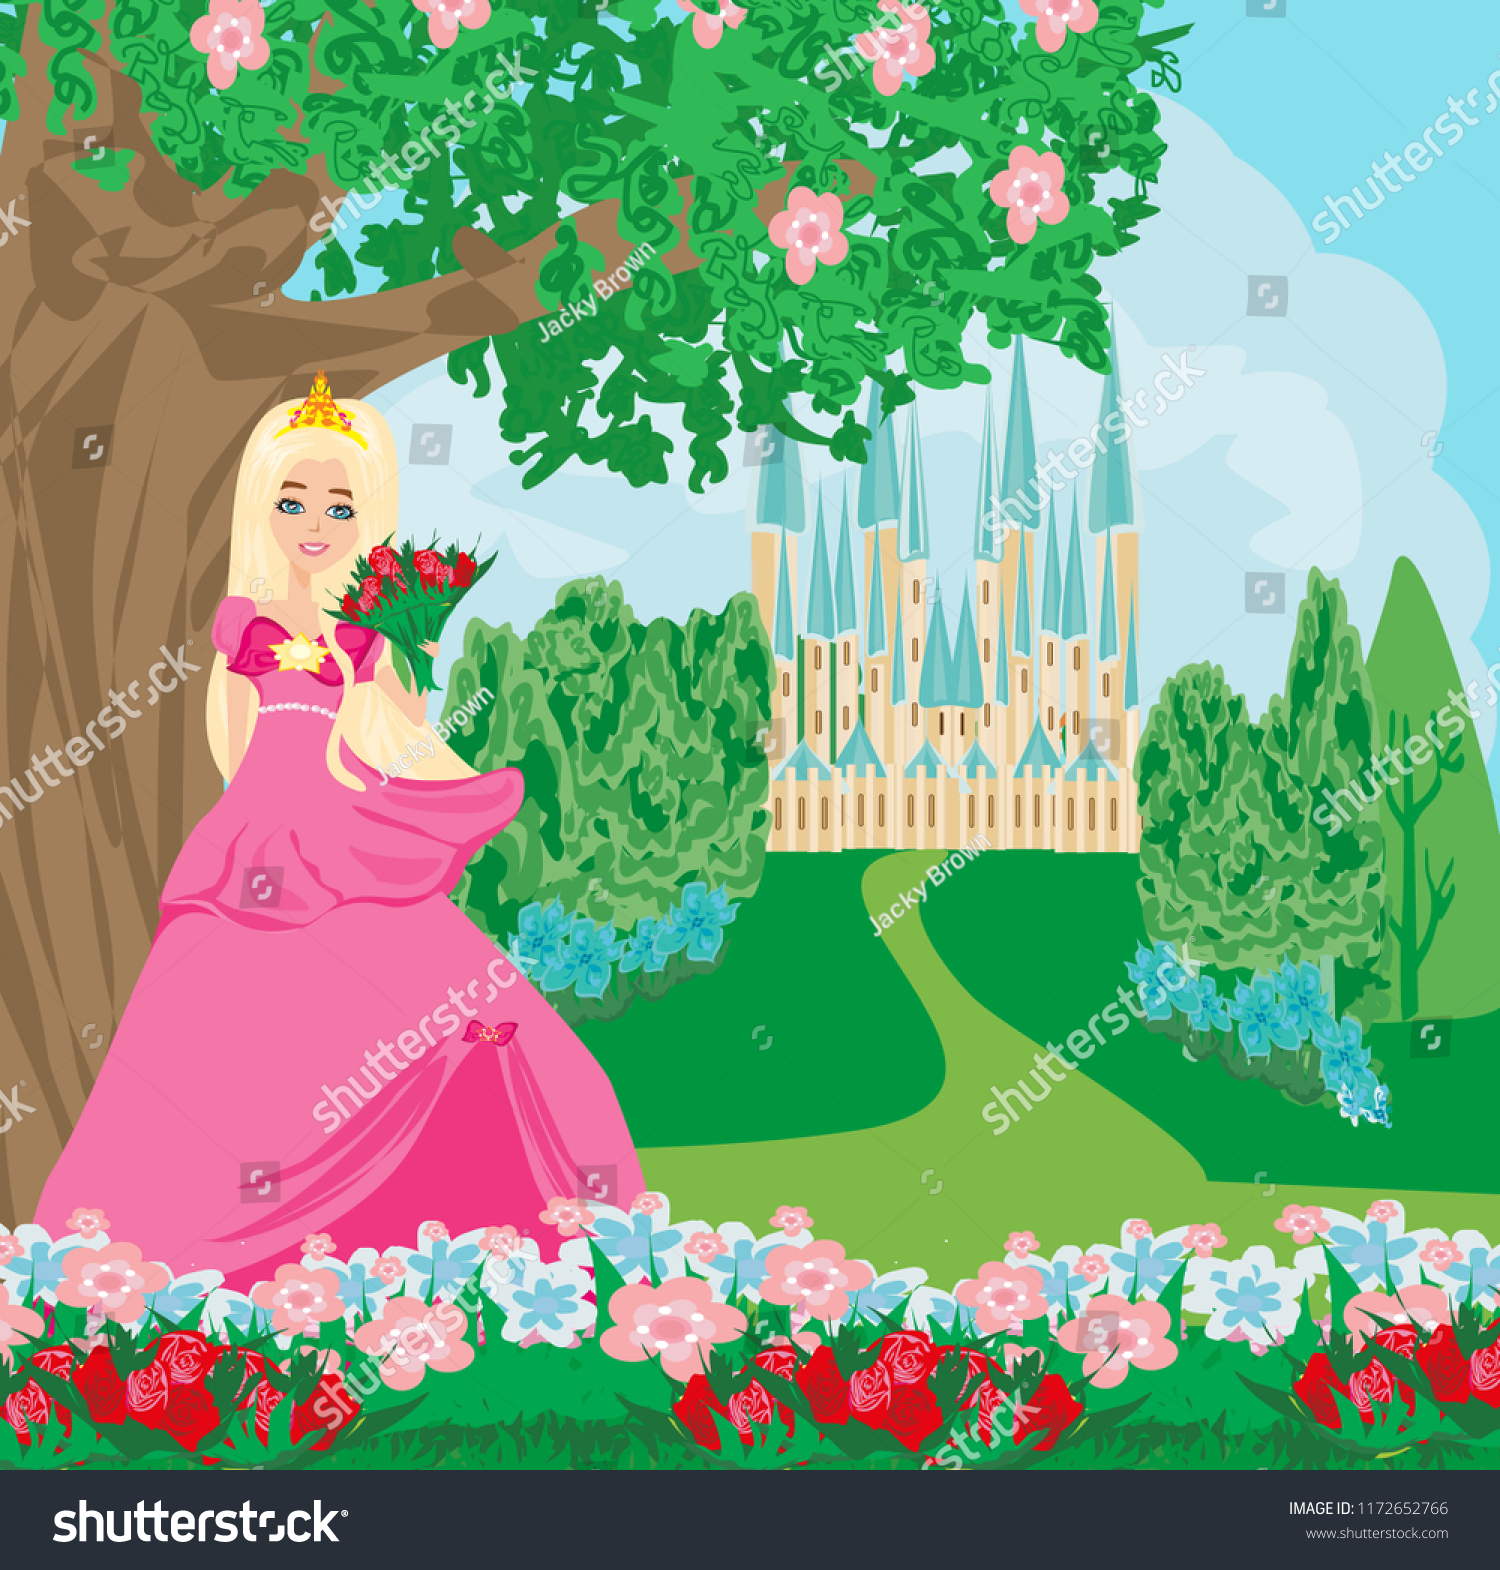 Принцесса в розовом платье с букетом роз